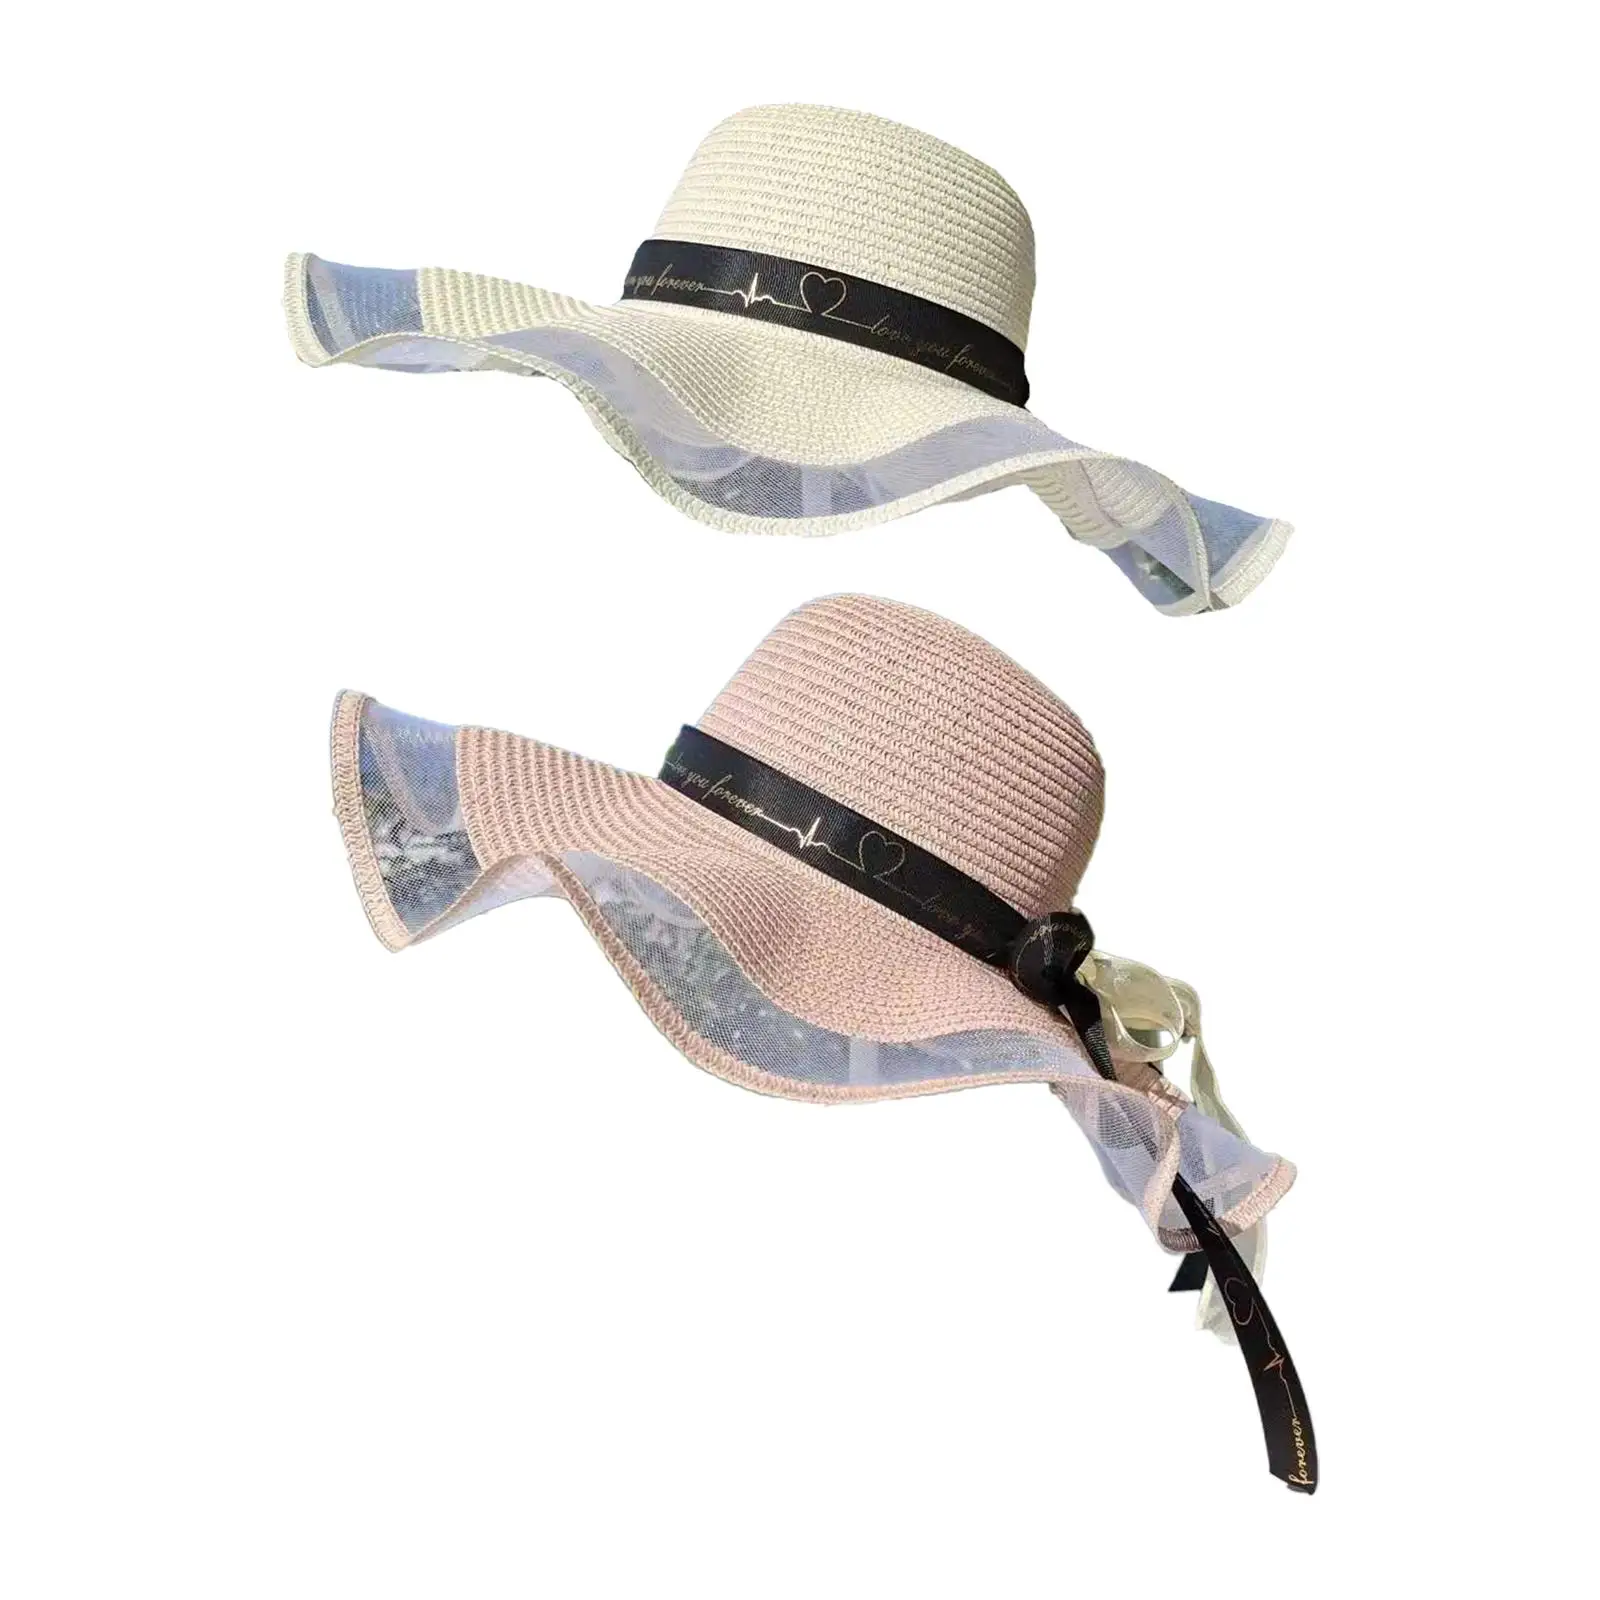 

Женские соломенные шляпы с бантом из ленты, защита от солнца, модная шляпа от солнца с широкими полями, пляжные шляпы флоппи шляпы для праздника, отдыха